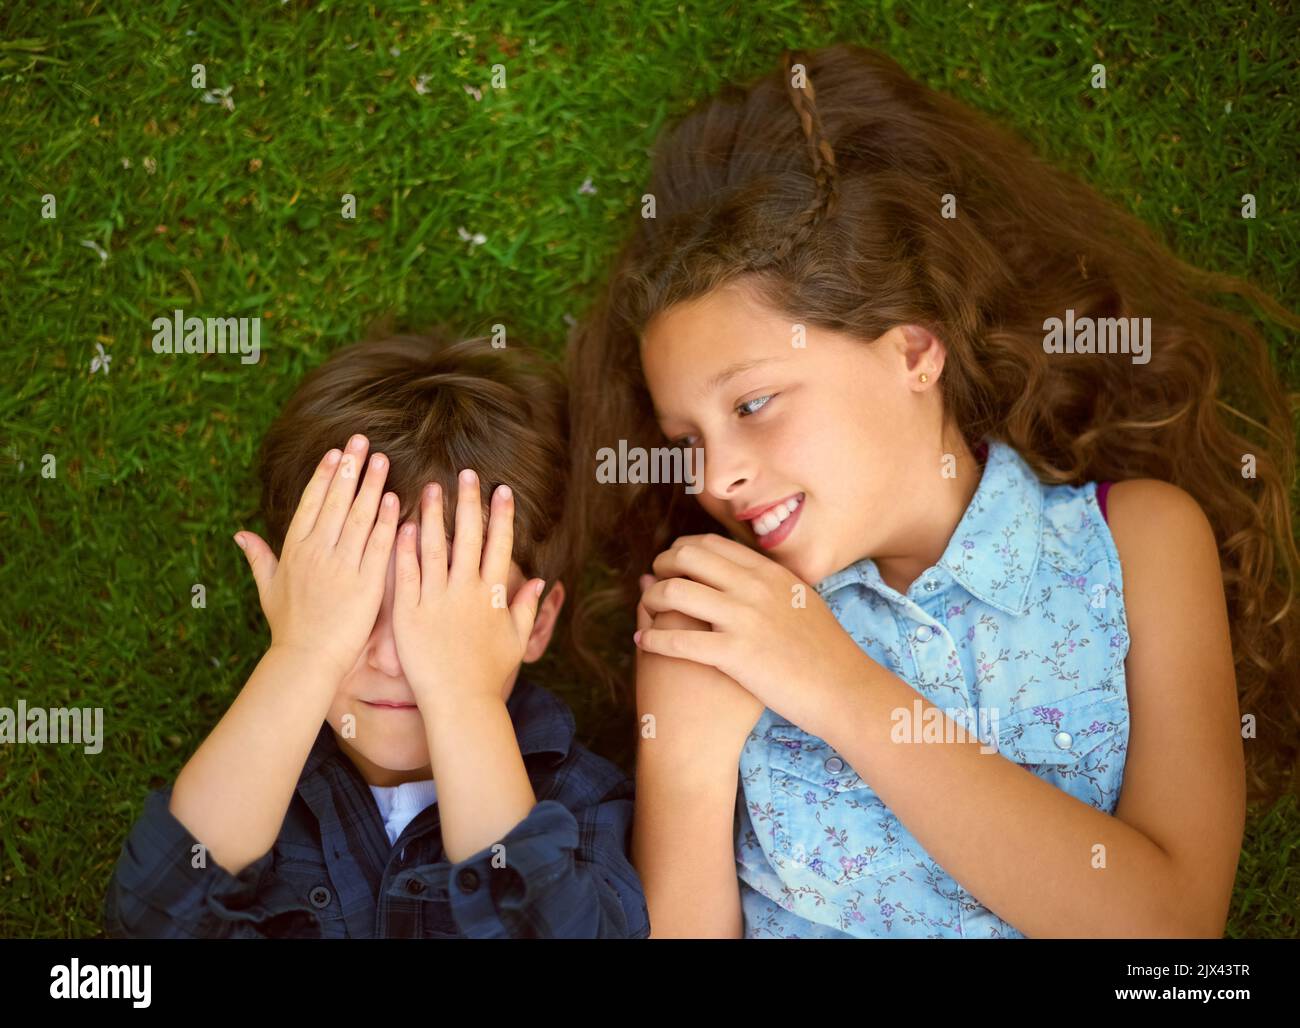 Brüder und Schwestern bilden die besten Spielkameraden. High-Angle-Aufnahme eines Jungen, der mit seiner Schwester draußen auf dem Rasen Peekaboo spielt. Stockfoto